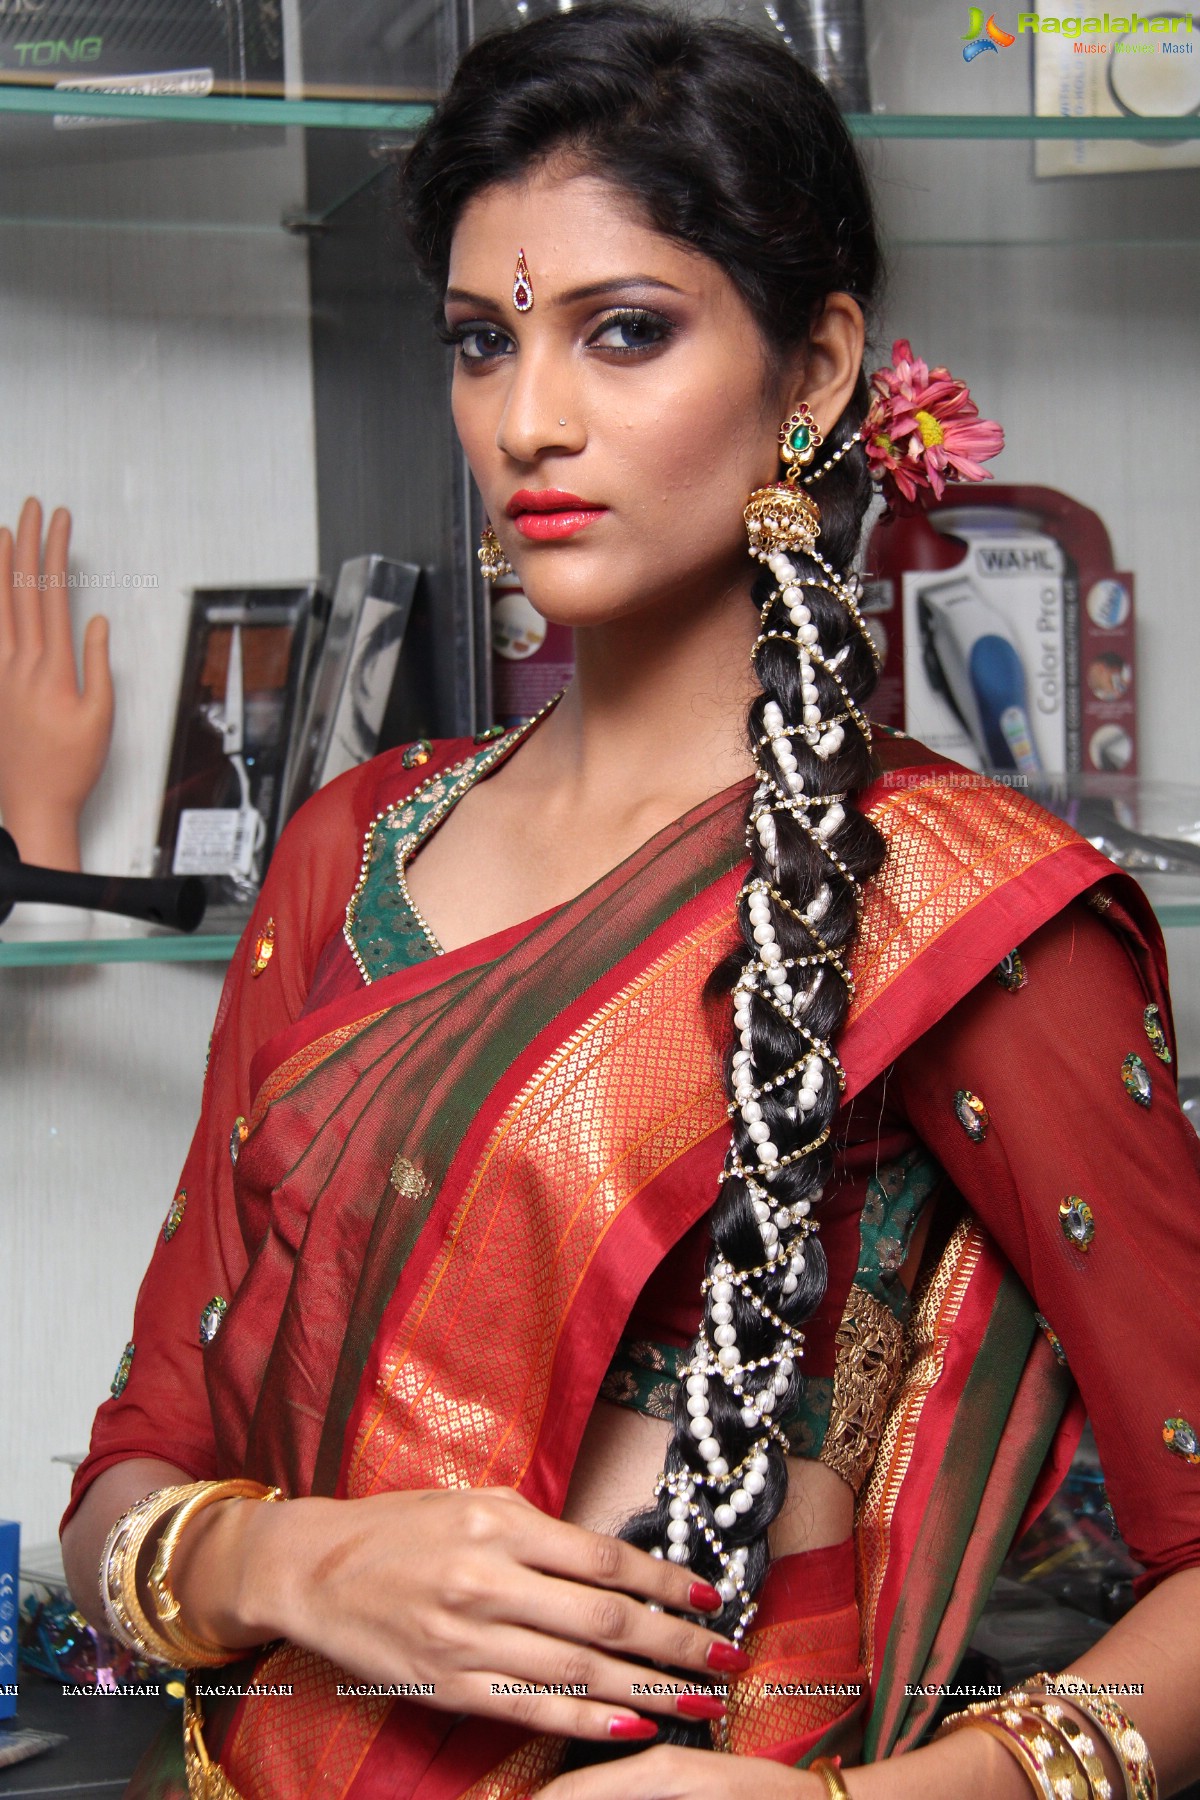 Cherag Bambboat Make-Up Session at Mirrors Spa and Salon, Hyderabad